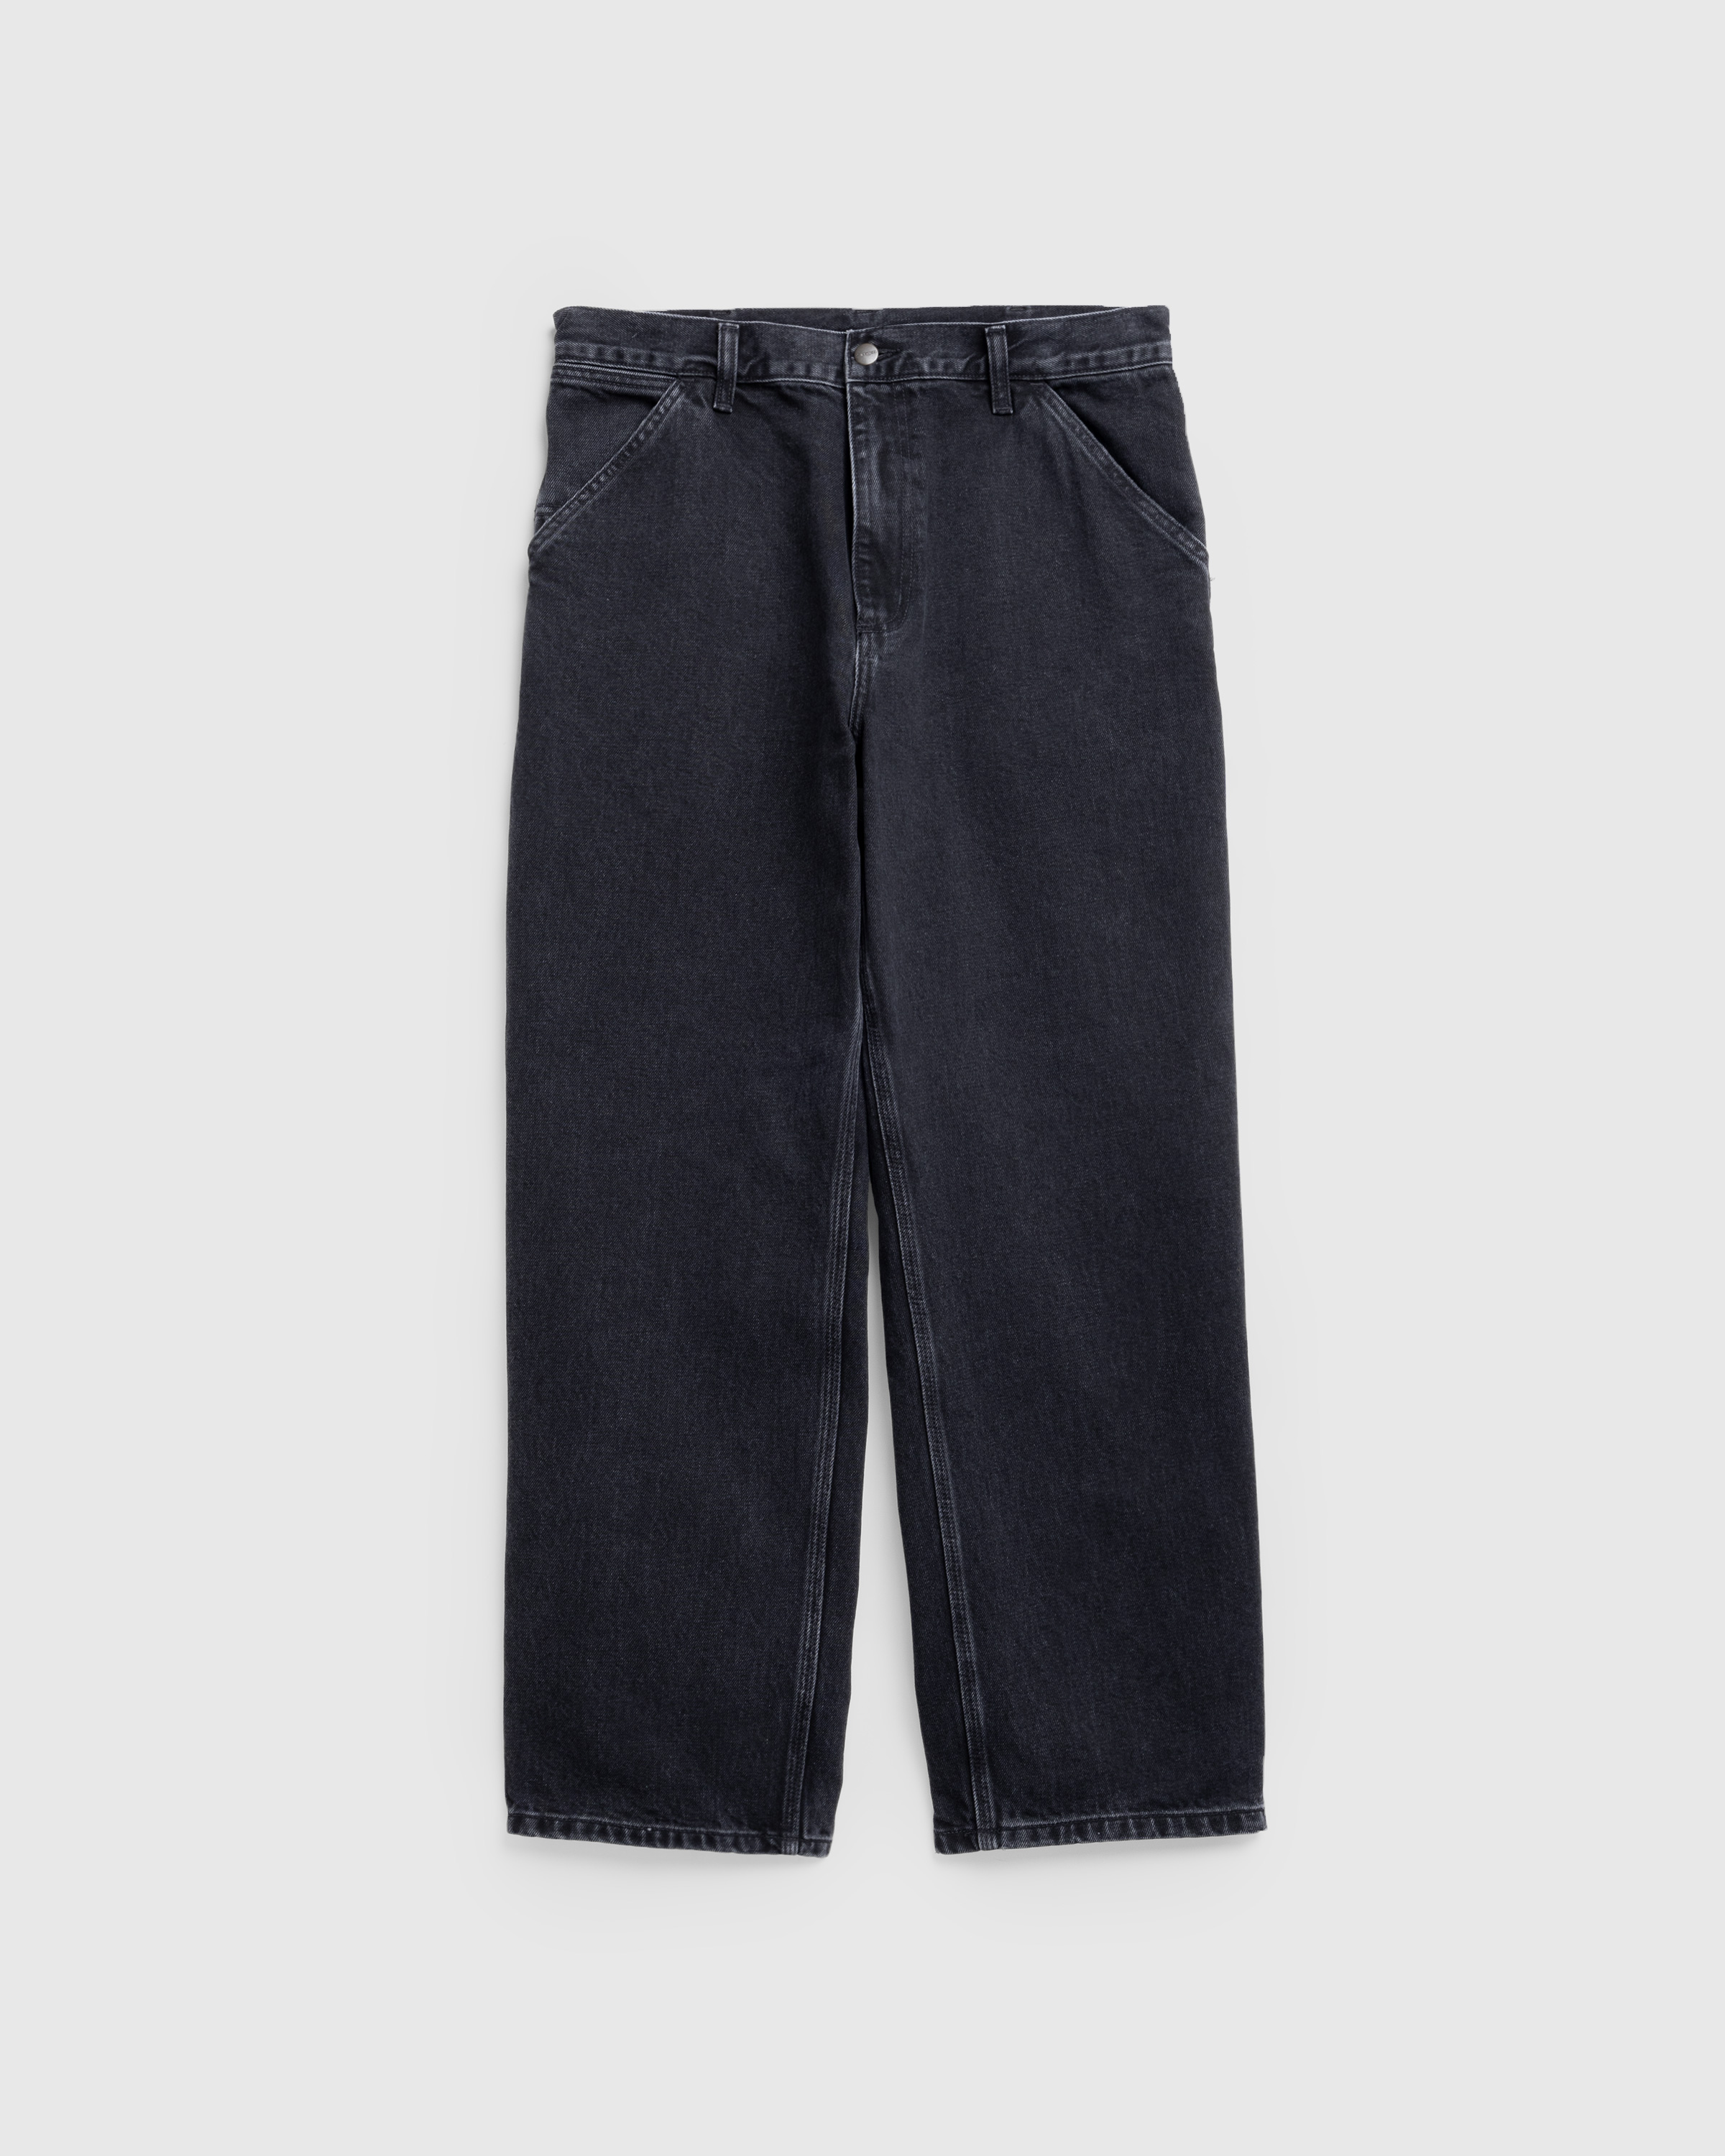 Carhartt – Single Knee Pant Black/Stone Washed - Active Shorts - Black - Image 1